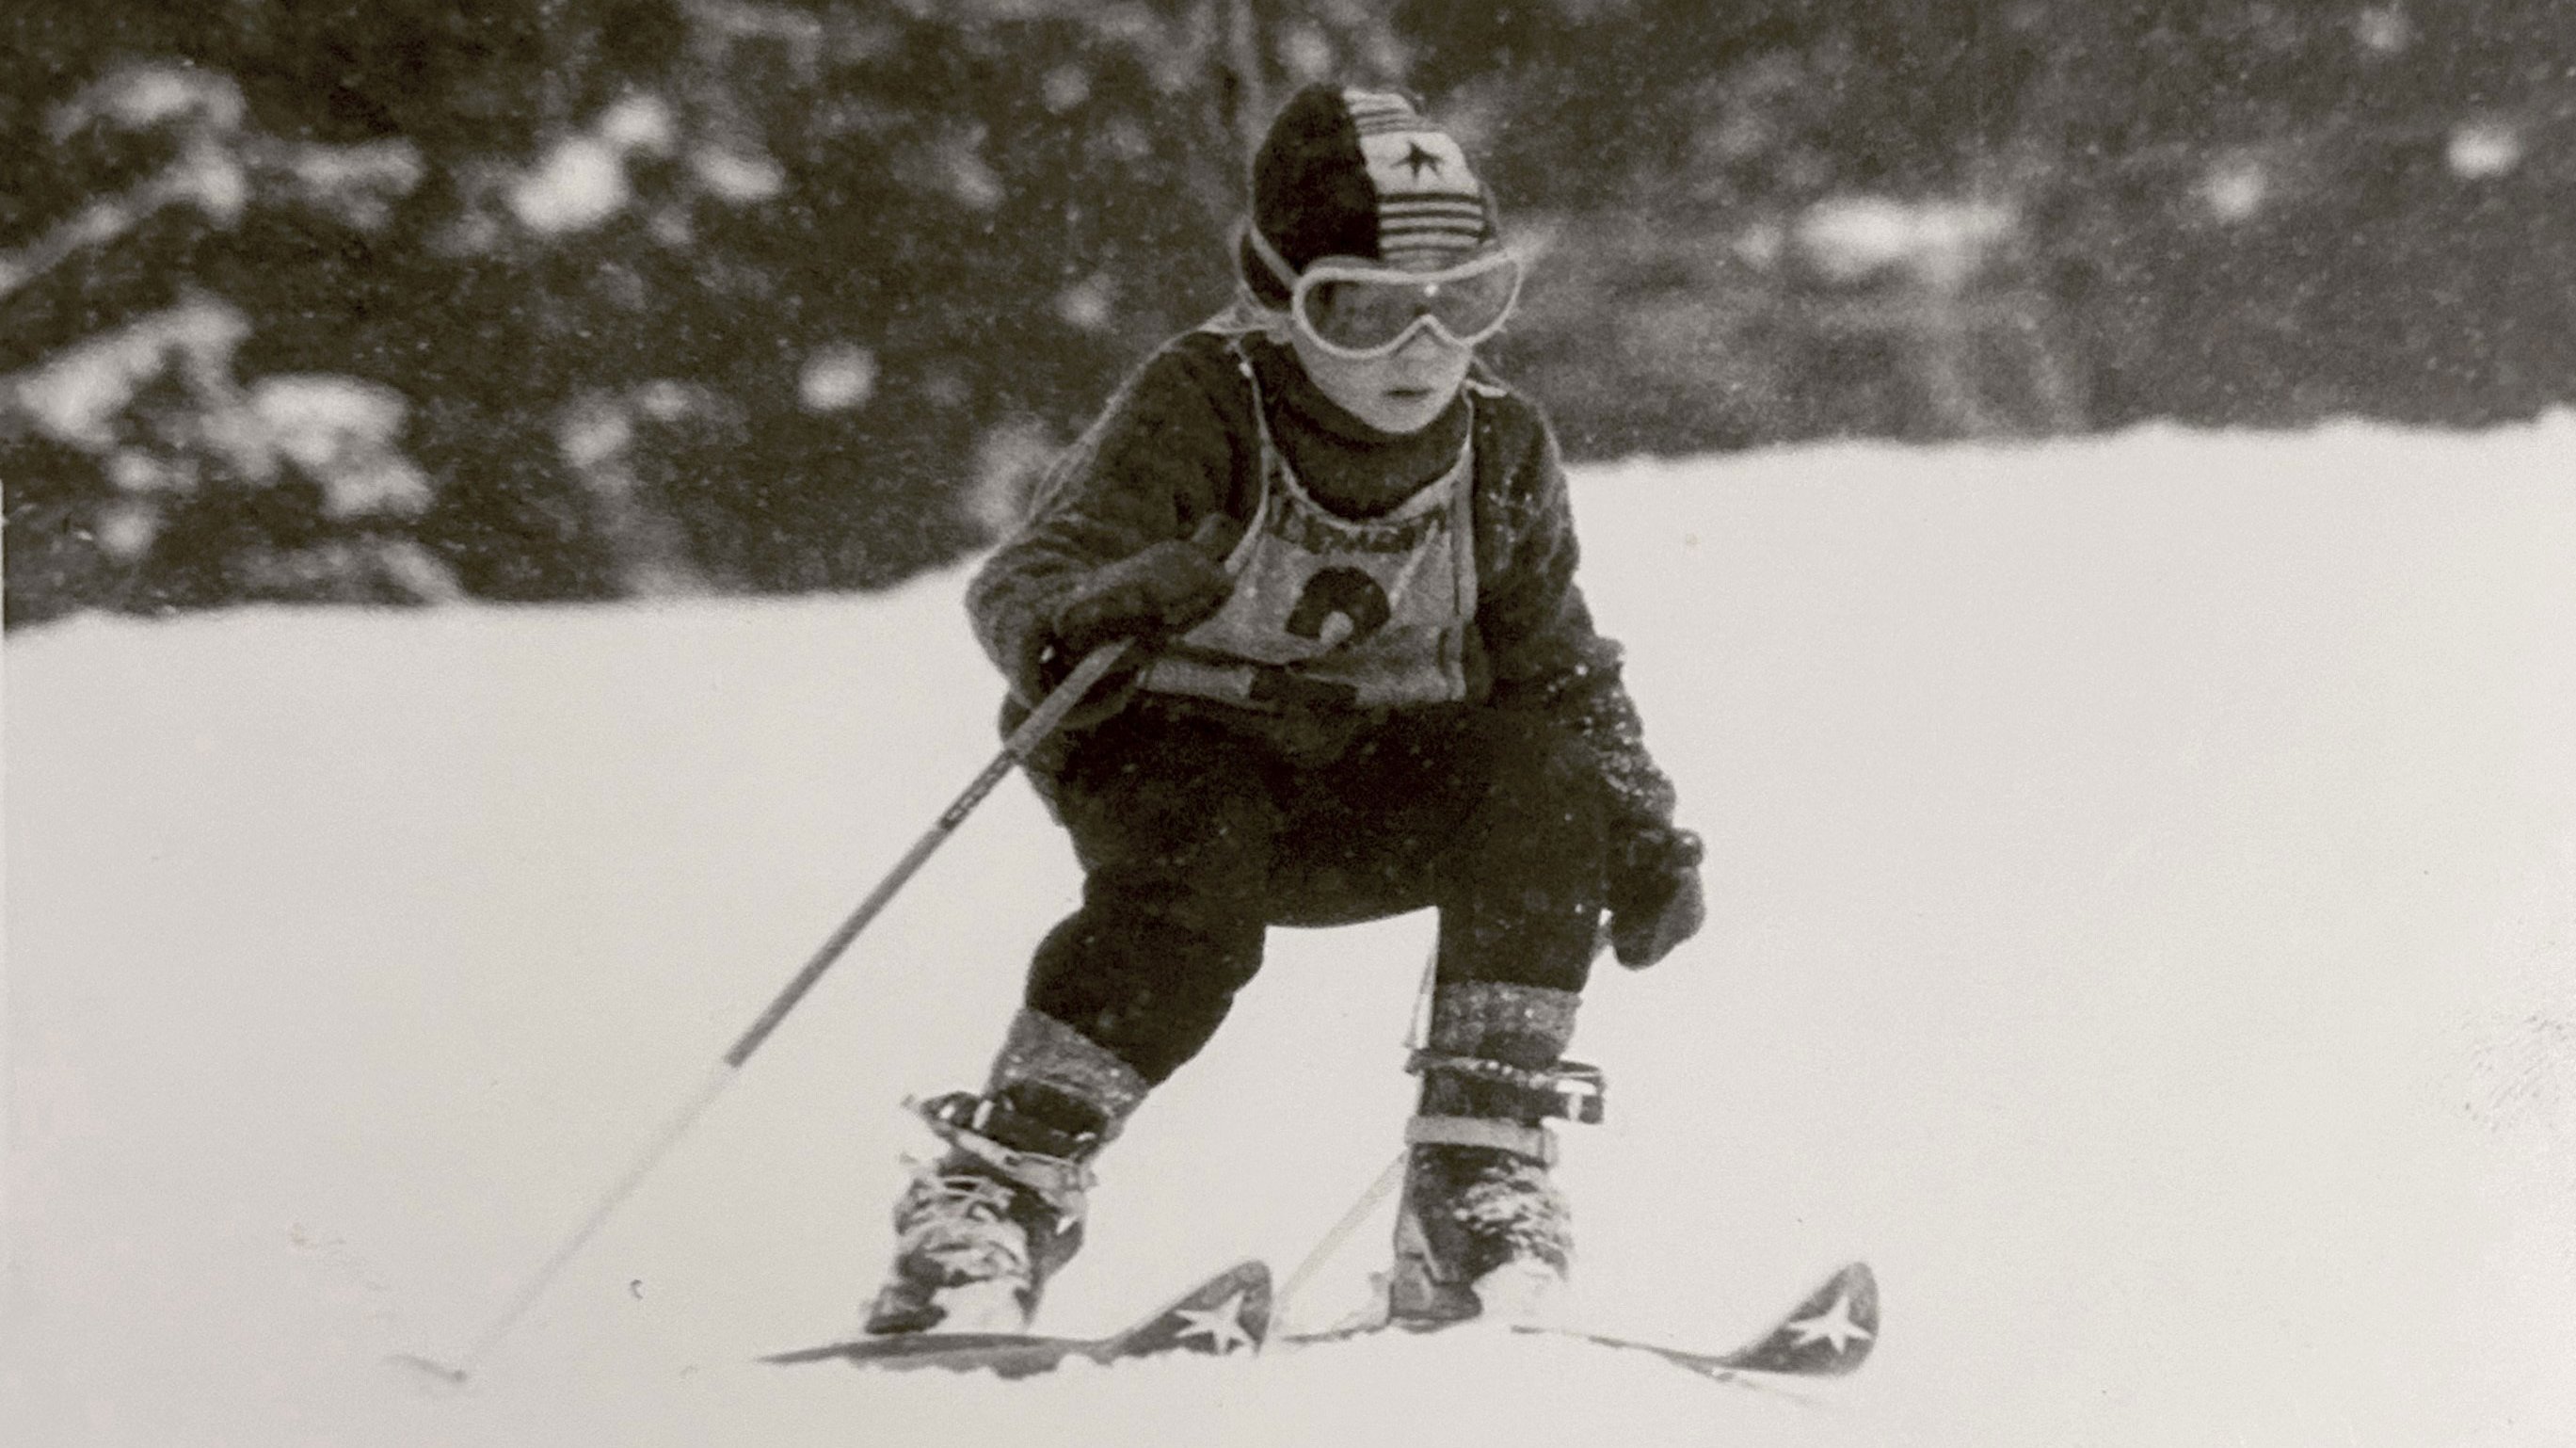 Wenzel Fuchs as a boy, skiing.